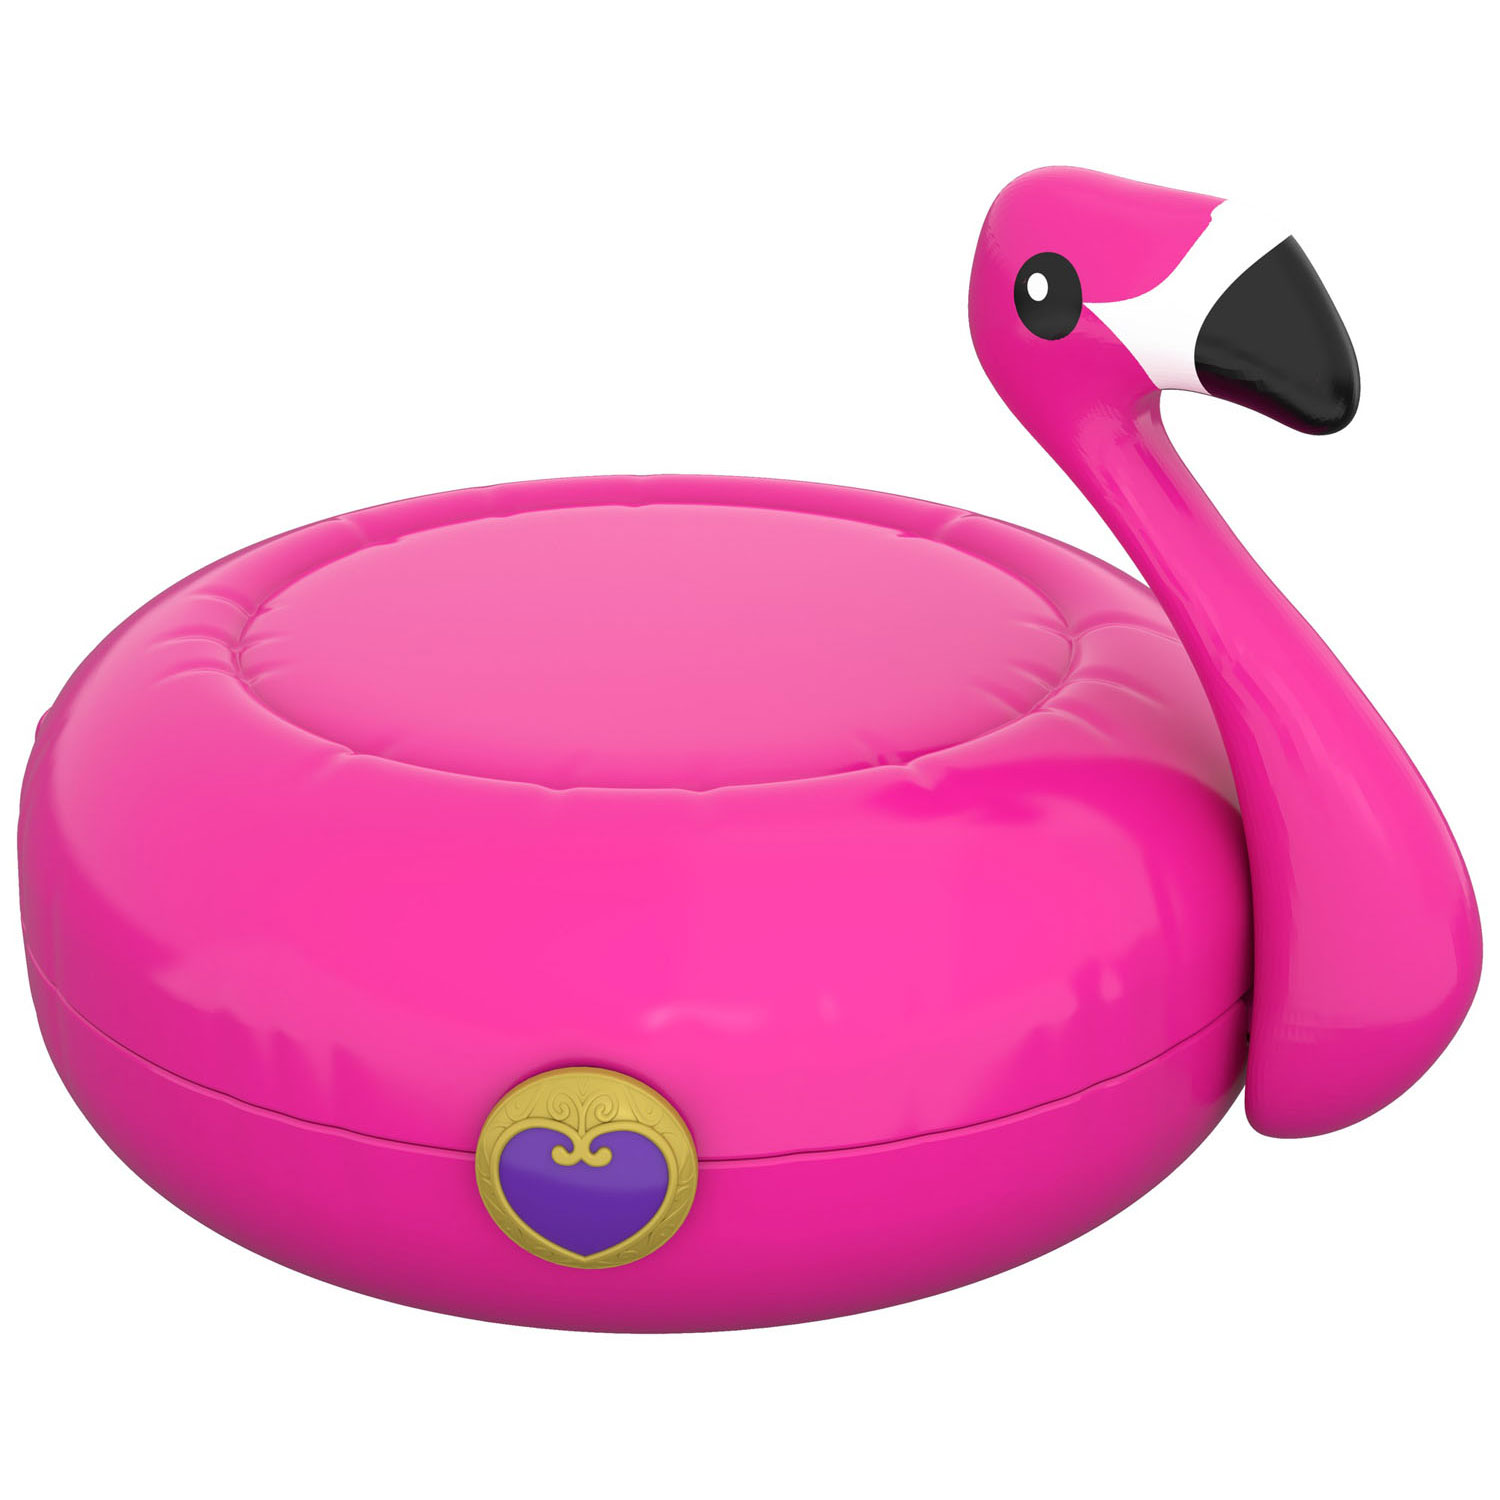 Polly Pocket Pocket World - Opblaasbare Flamingo